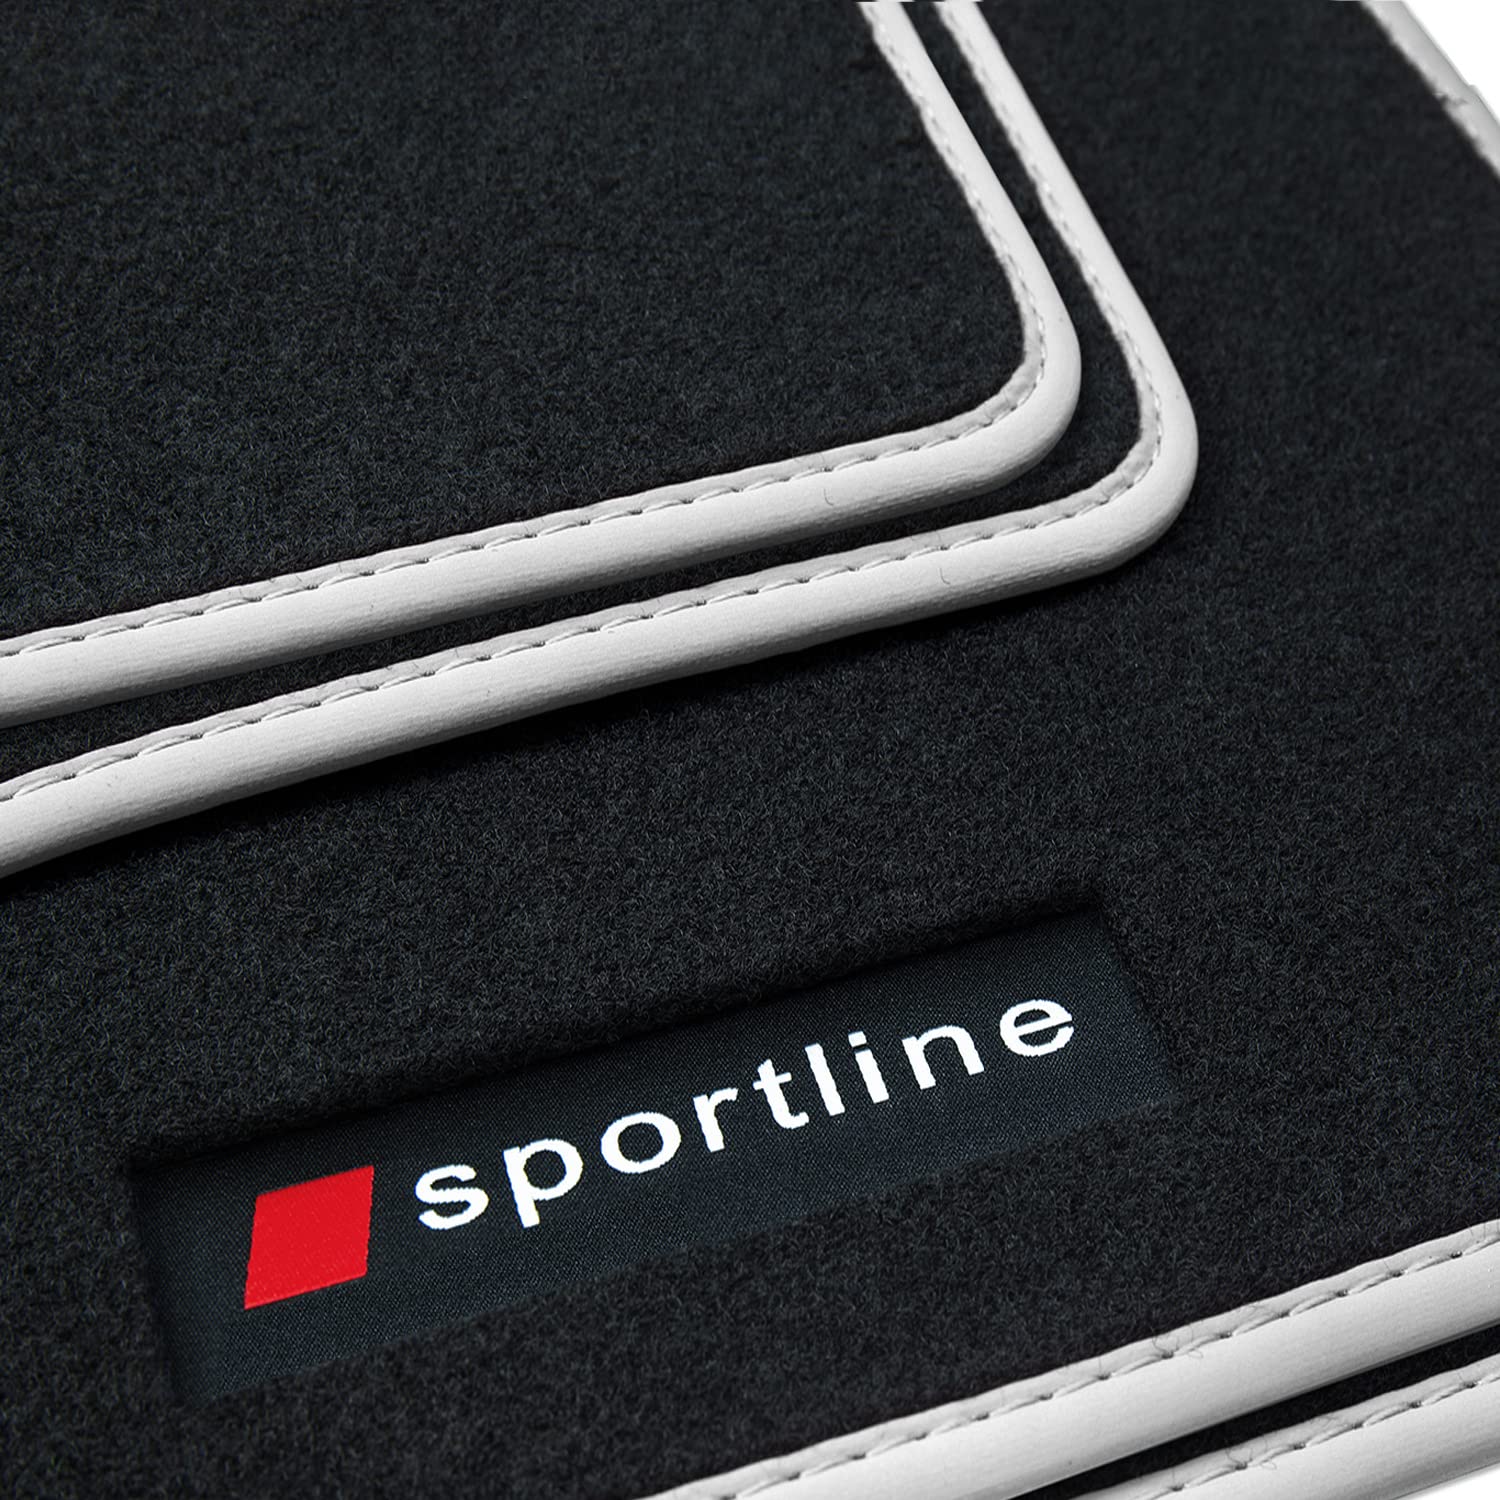 teileplus24 PV109 Fußmatten Gummimatten Sportline Design kompatibel mit Audi Q7 1 4L 2006-2015, Bandeinfassung:Silber von teileplus24